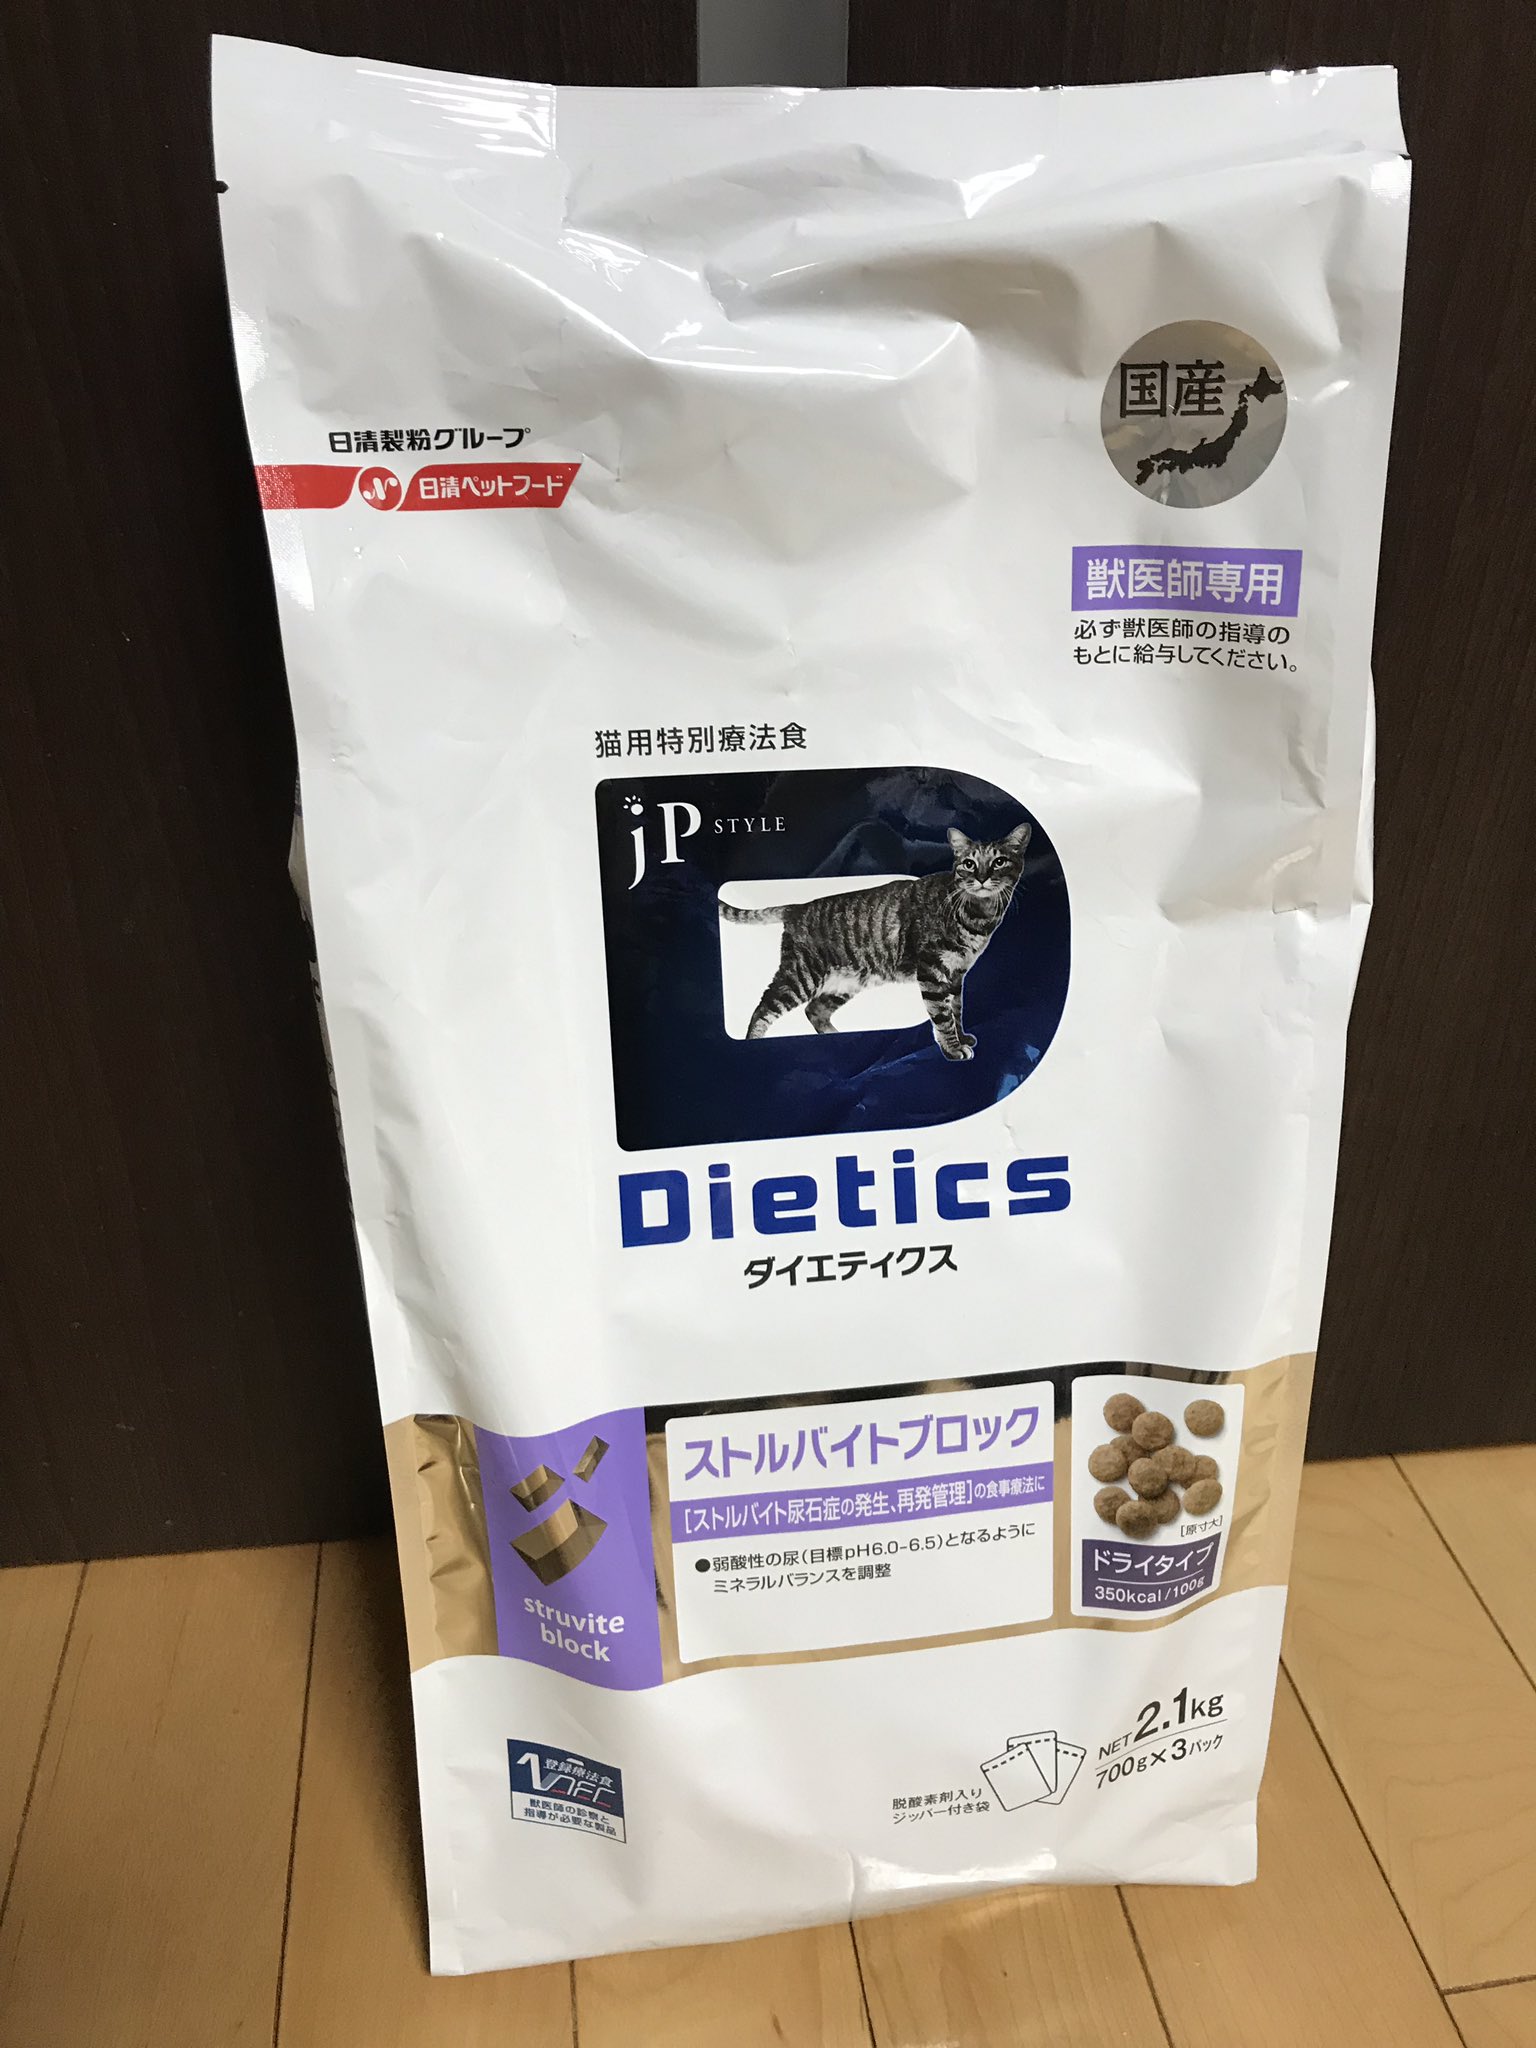 ストルバイトブロック 猫用特別療養食 ダイエテイクス 国産